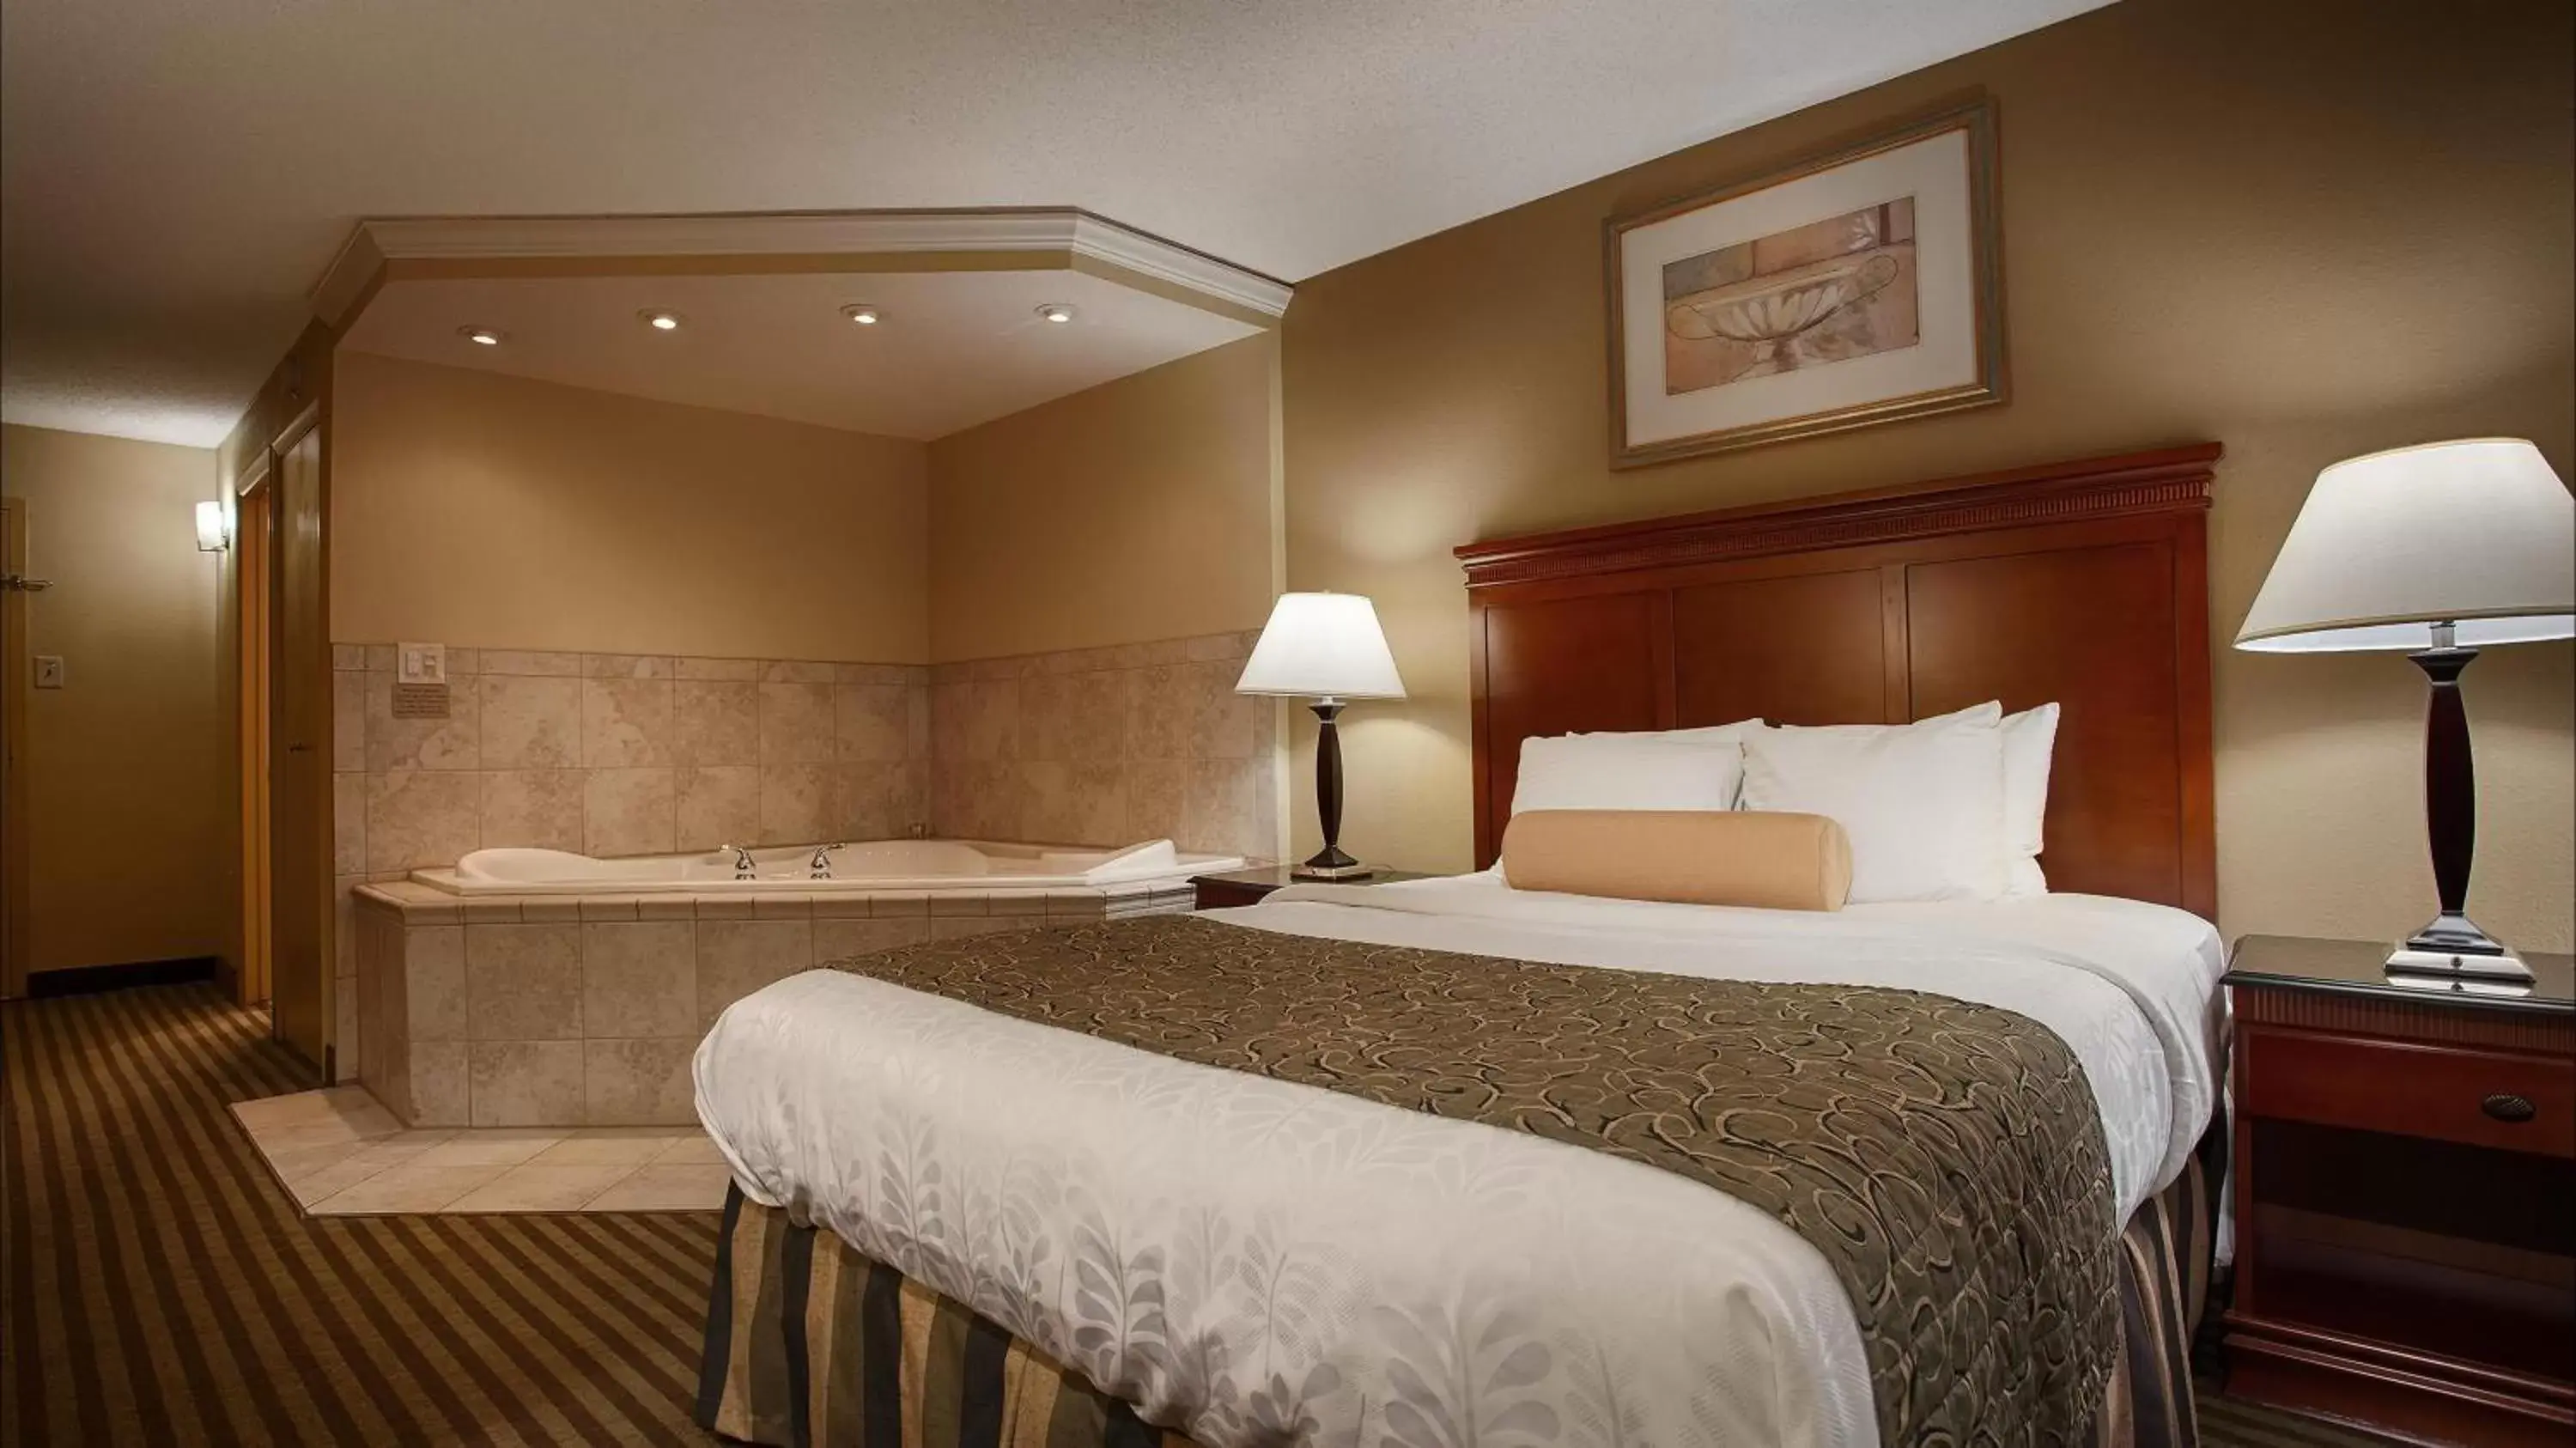 Bedroom, Room Photo in Best Western Plus Bridgeport Inn